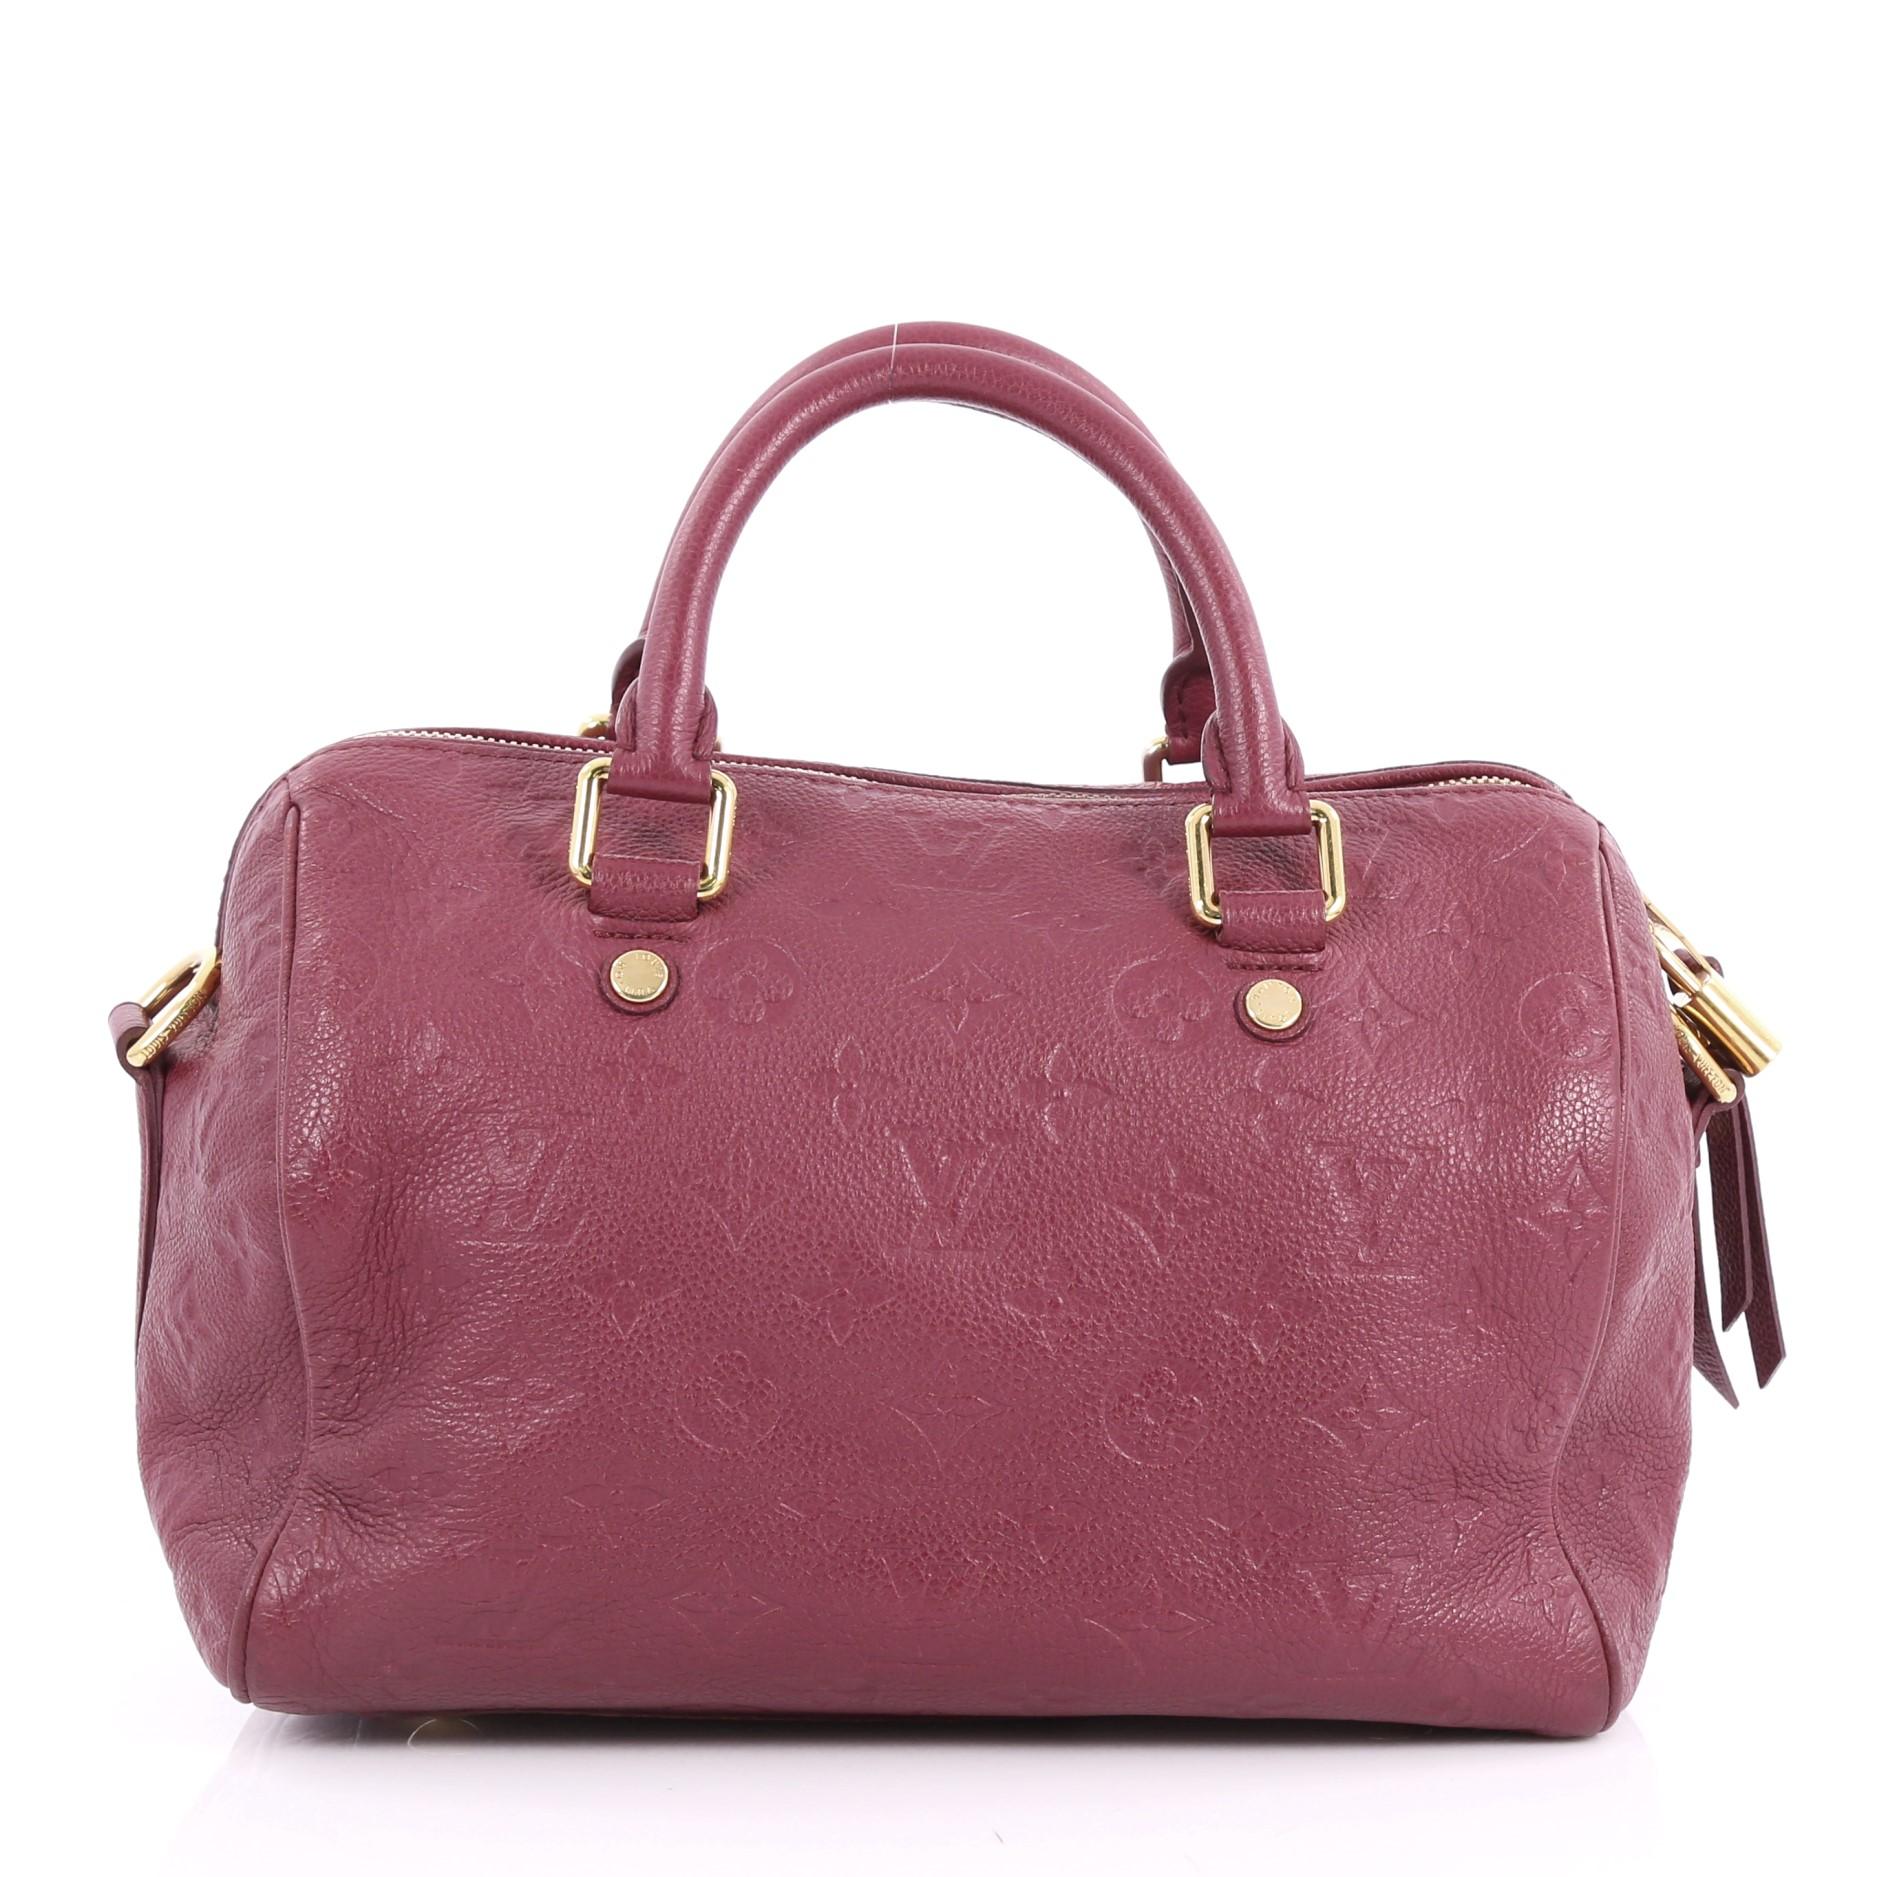 Pink Louis Vuitton Speedy Bandouliere Bag Monogram Empreinte Leather 25